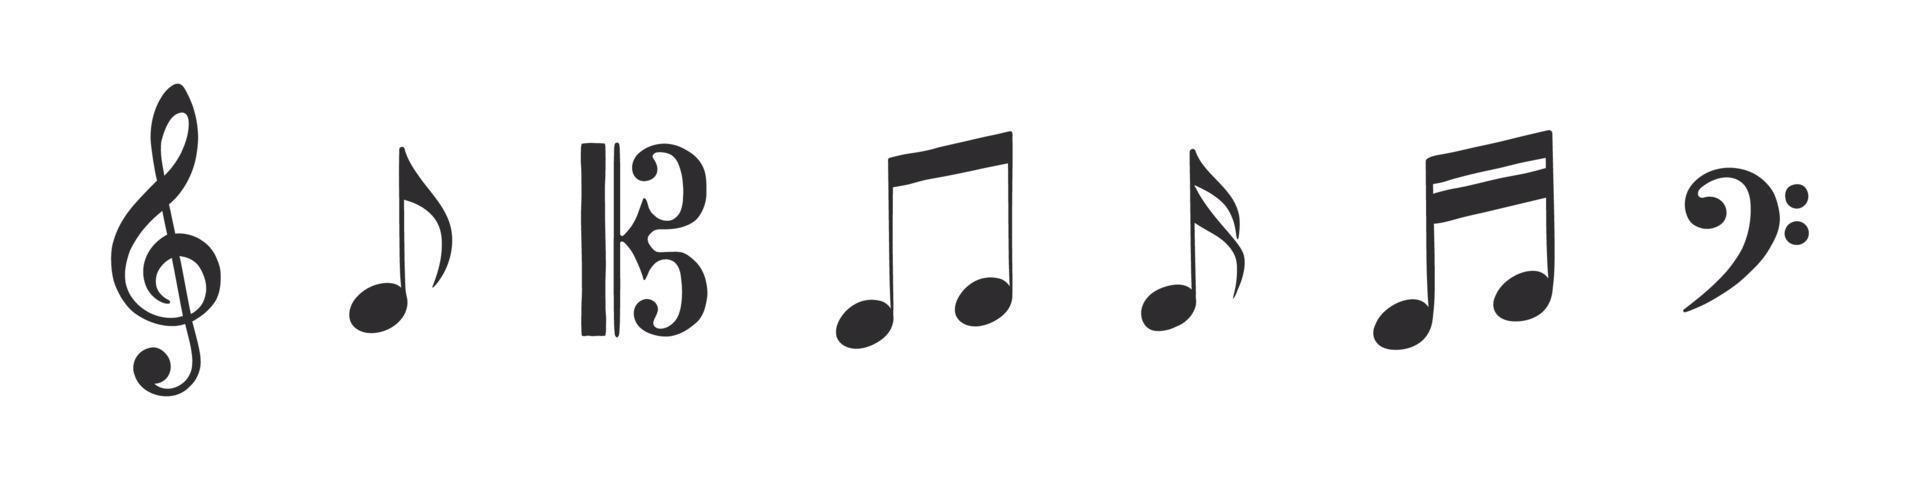 notas musicales. conjunto de símbolos musicales. símbolos musicales dibujados a mano en diversas variaciones. ilustración vectorial vector